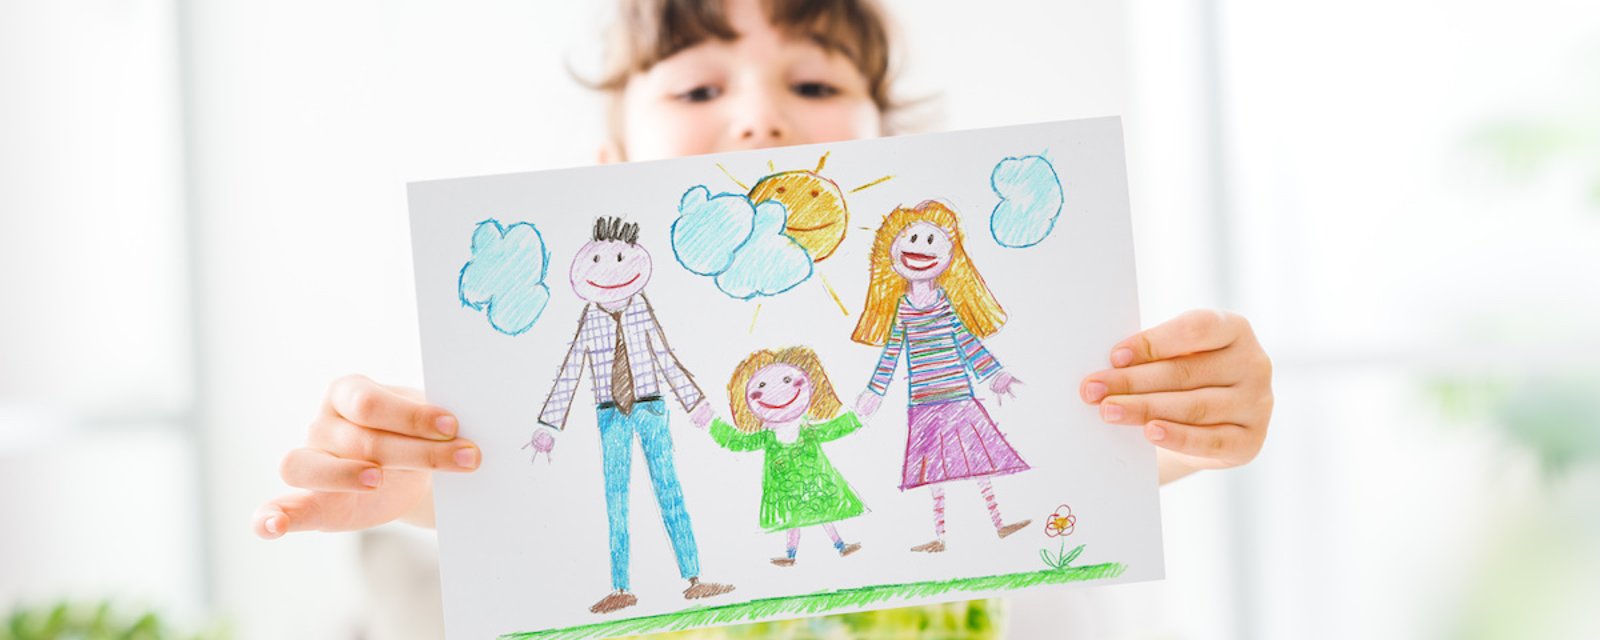 Analyser les dessins de vos enfants: quelques pistes